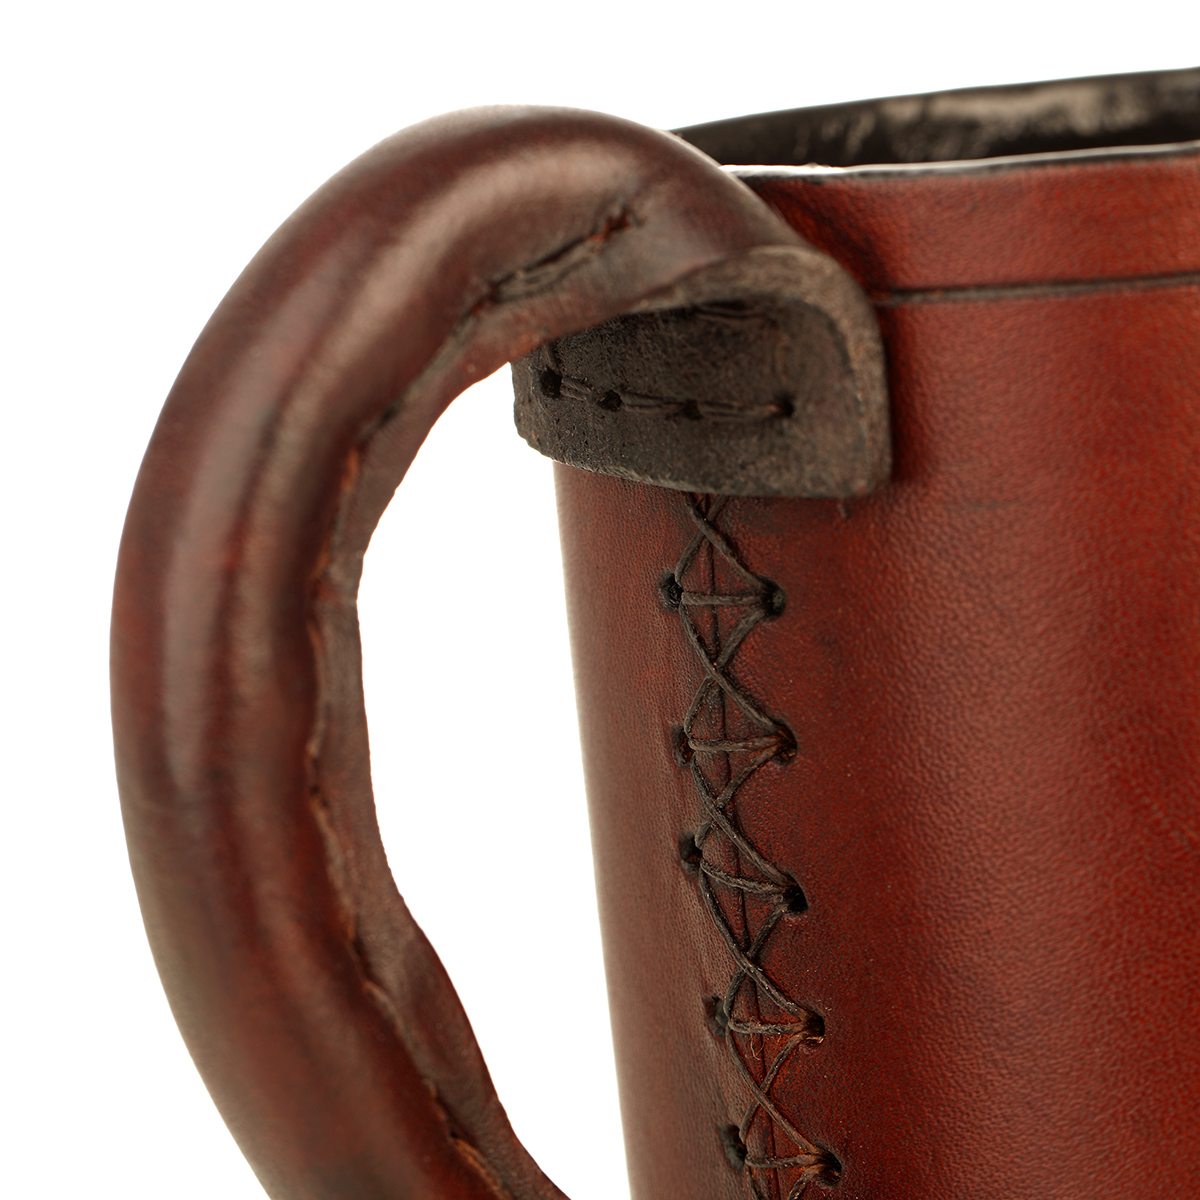 Medieval Jack - 1 Pint Mittelalter Leder Bierkrug aus England - dunkelbraun